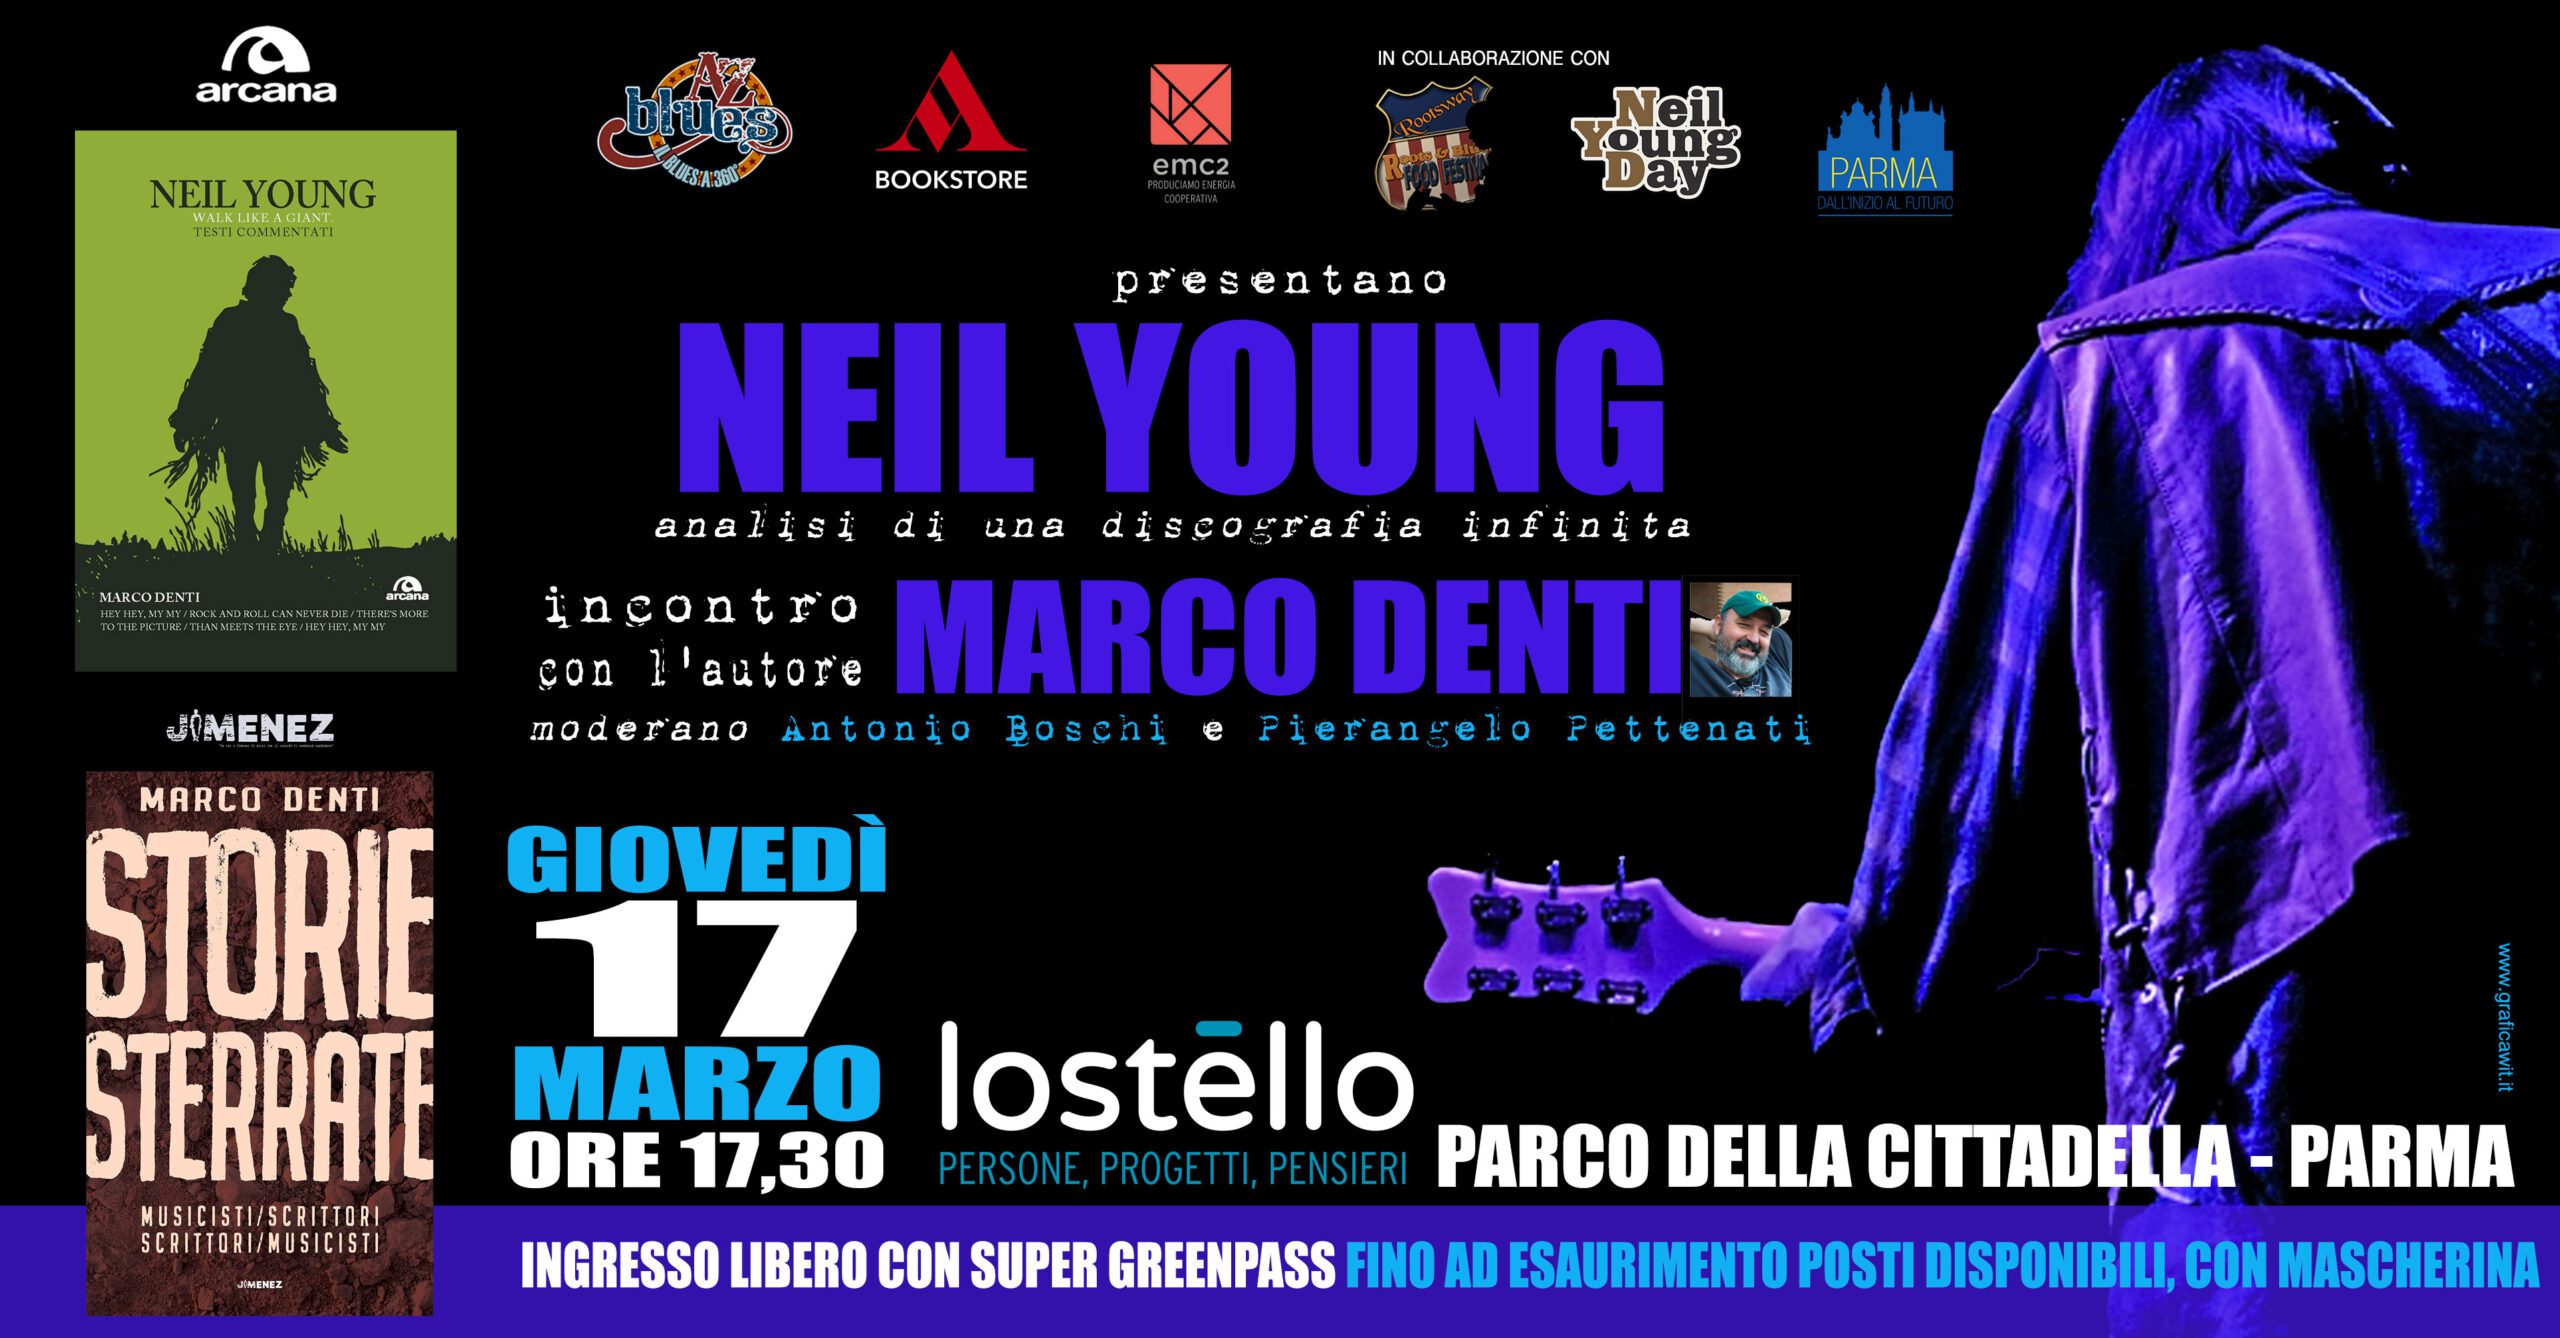 Marco Denti presenta il libro su Neil Young a Parma